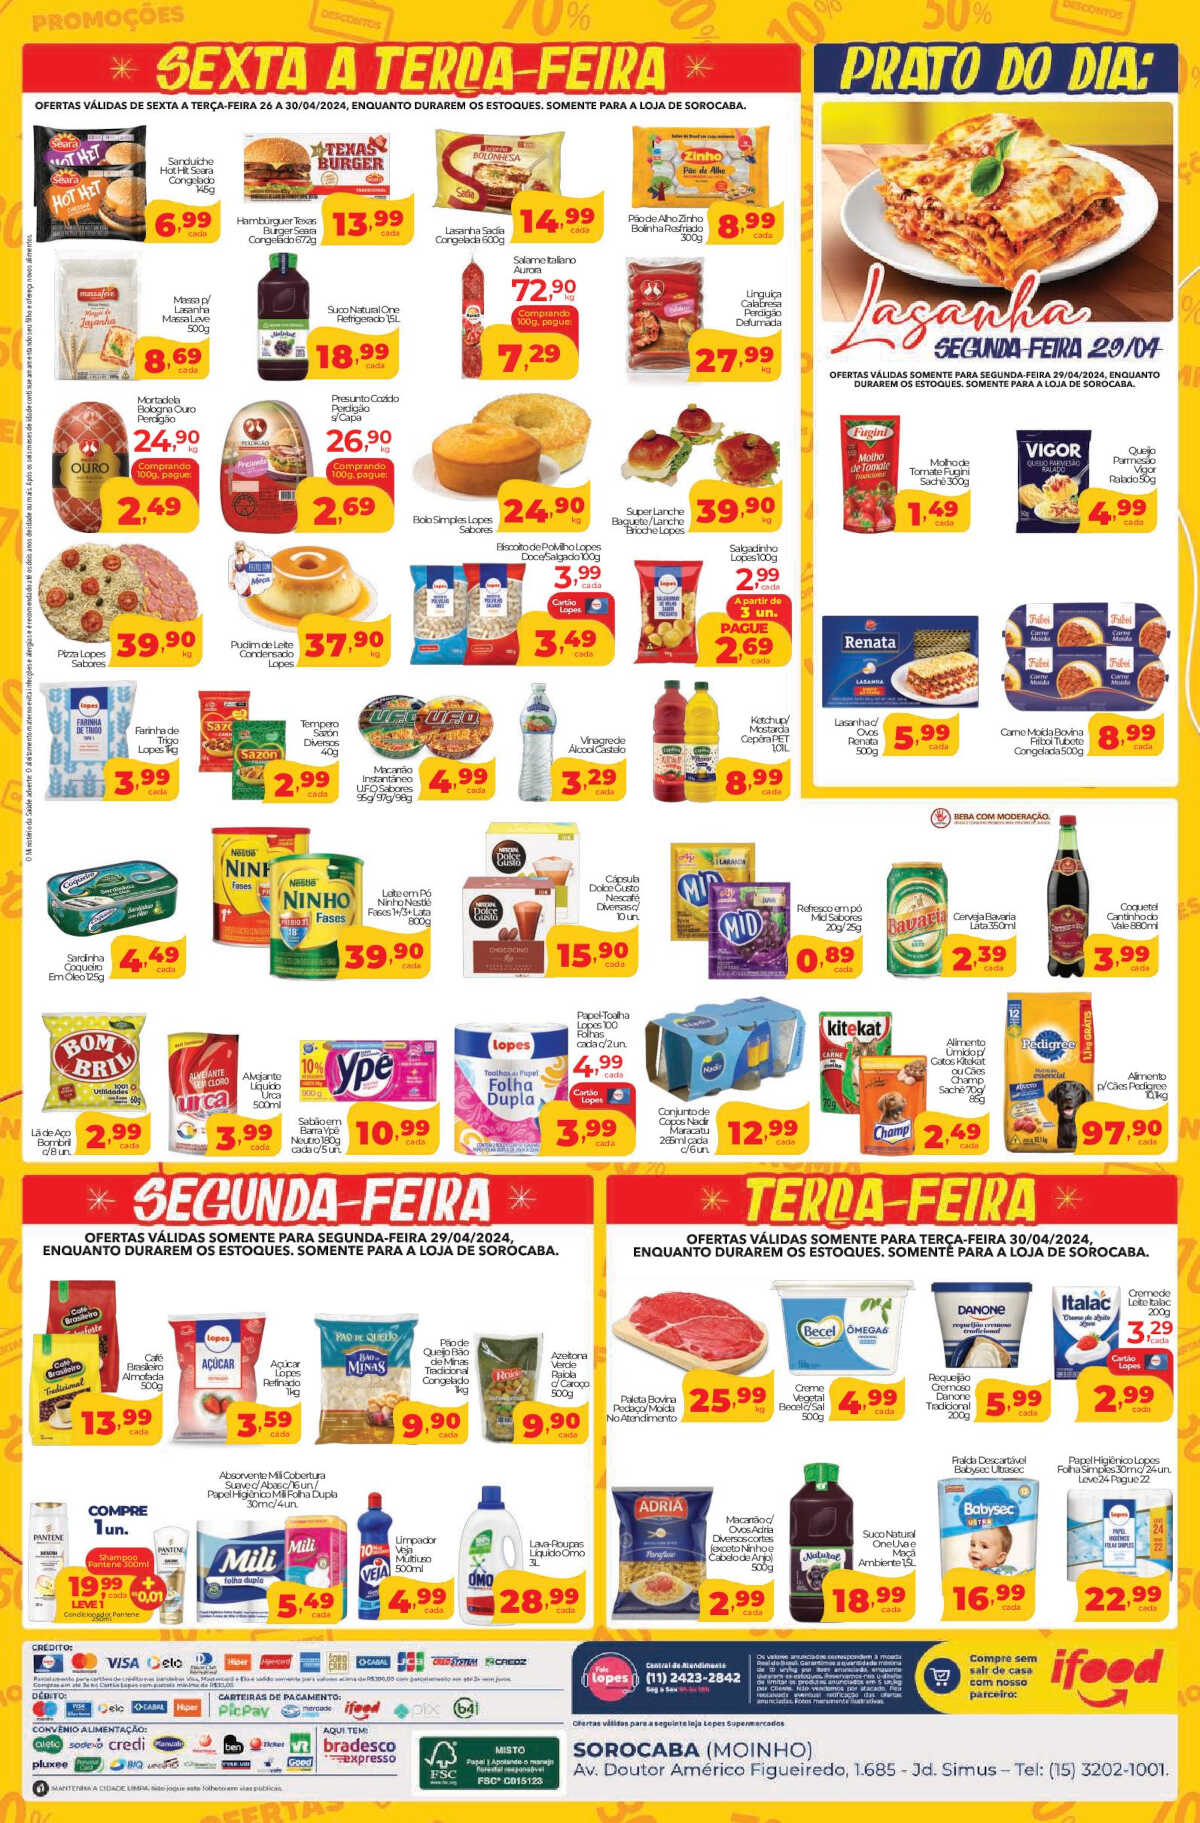 Ofertas Lopes Supermercados até 30/04